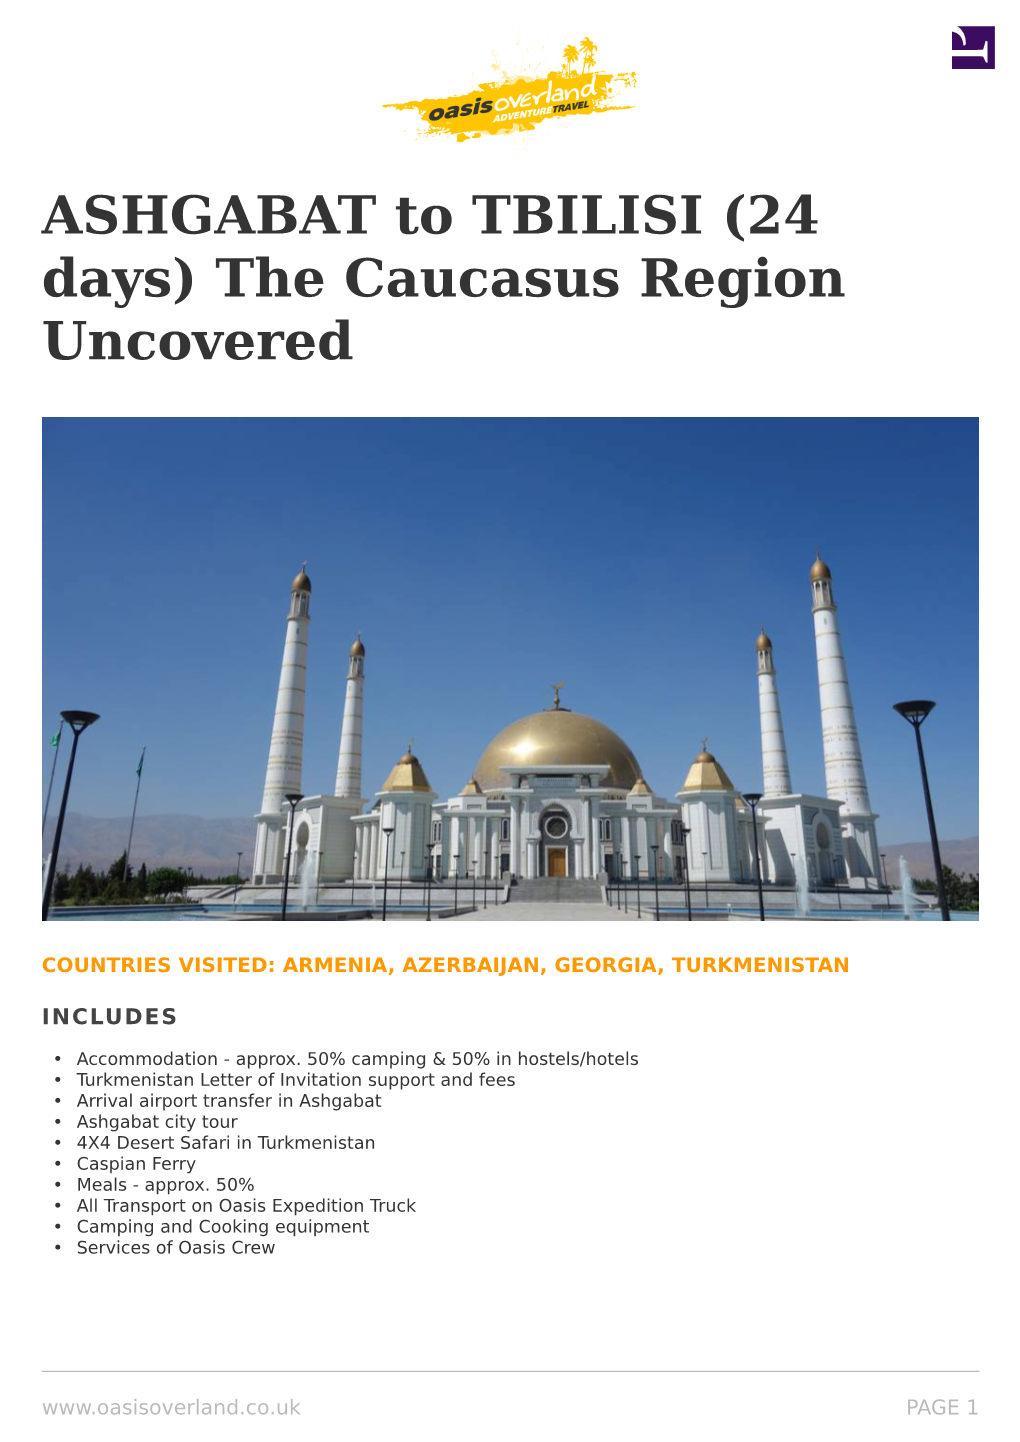 ASHGABAT to TBILISI (24 Days) the Caucasus Region Uncovered